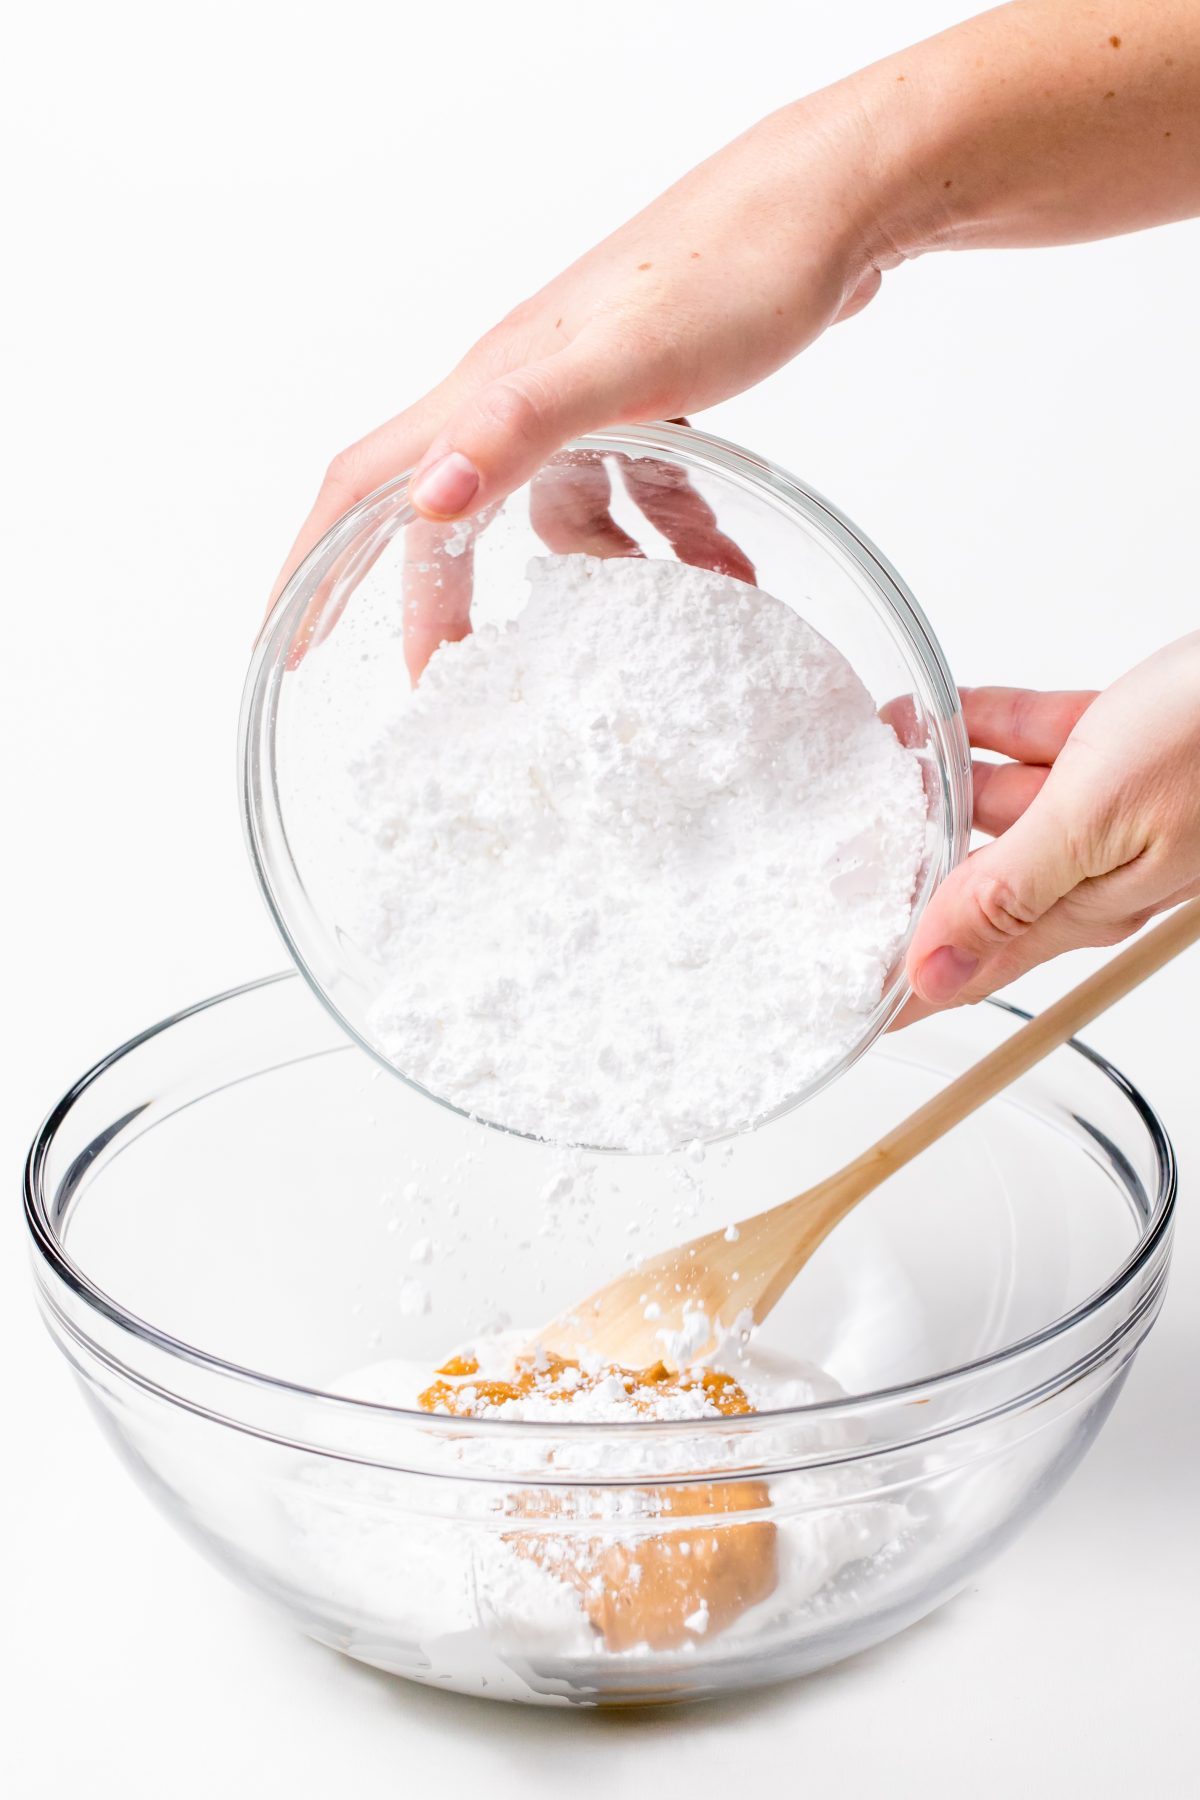 Add powdered sugar to bowl